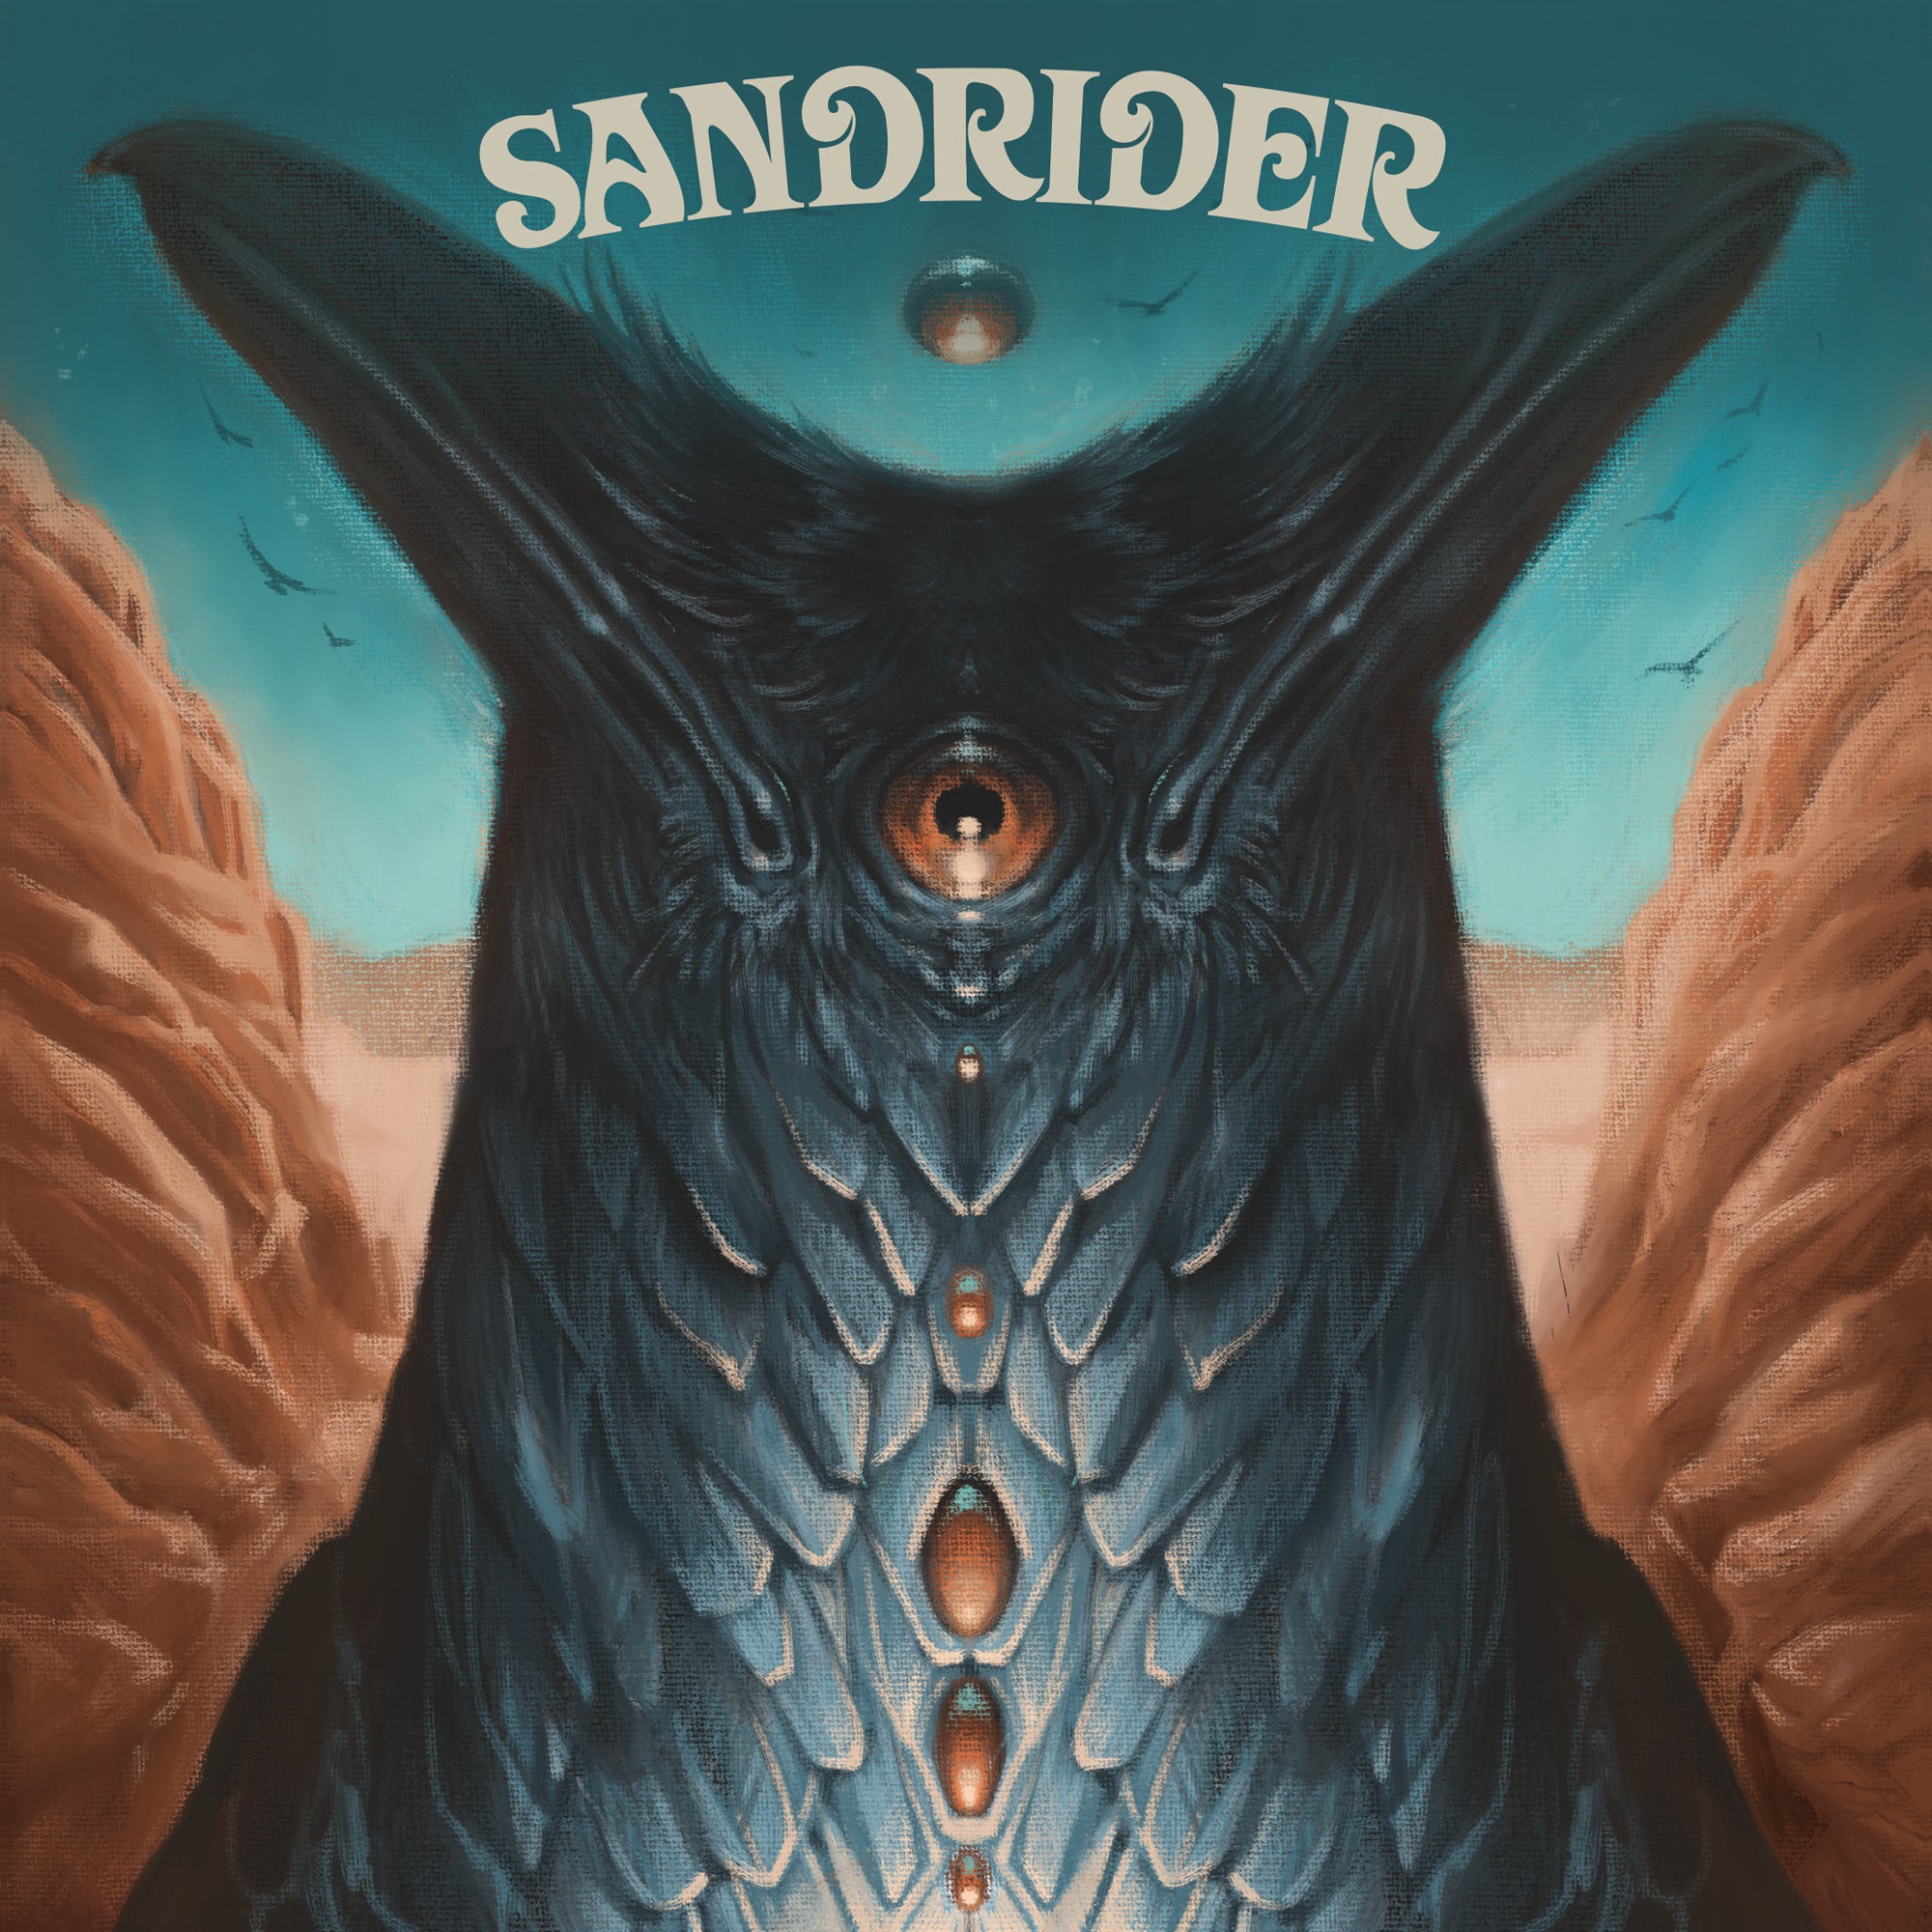 V517 - SANDRIDER - "Aviary & Baleen" 7" Pre-Order